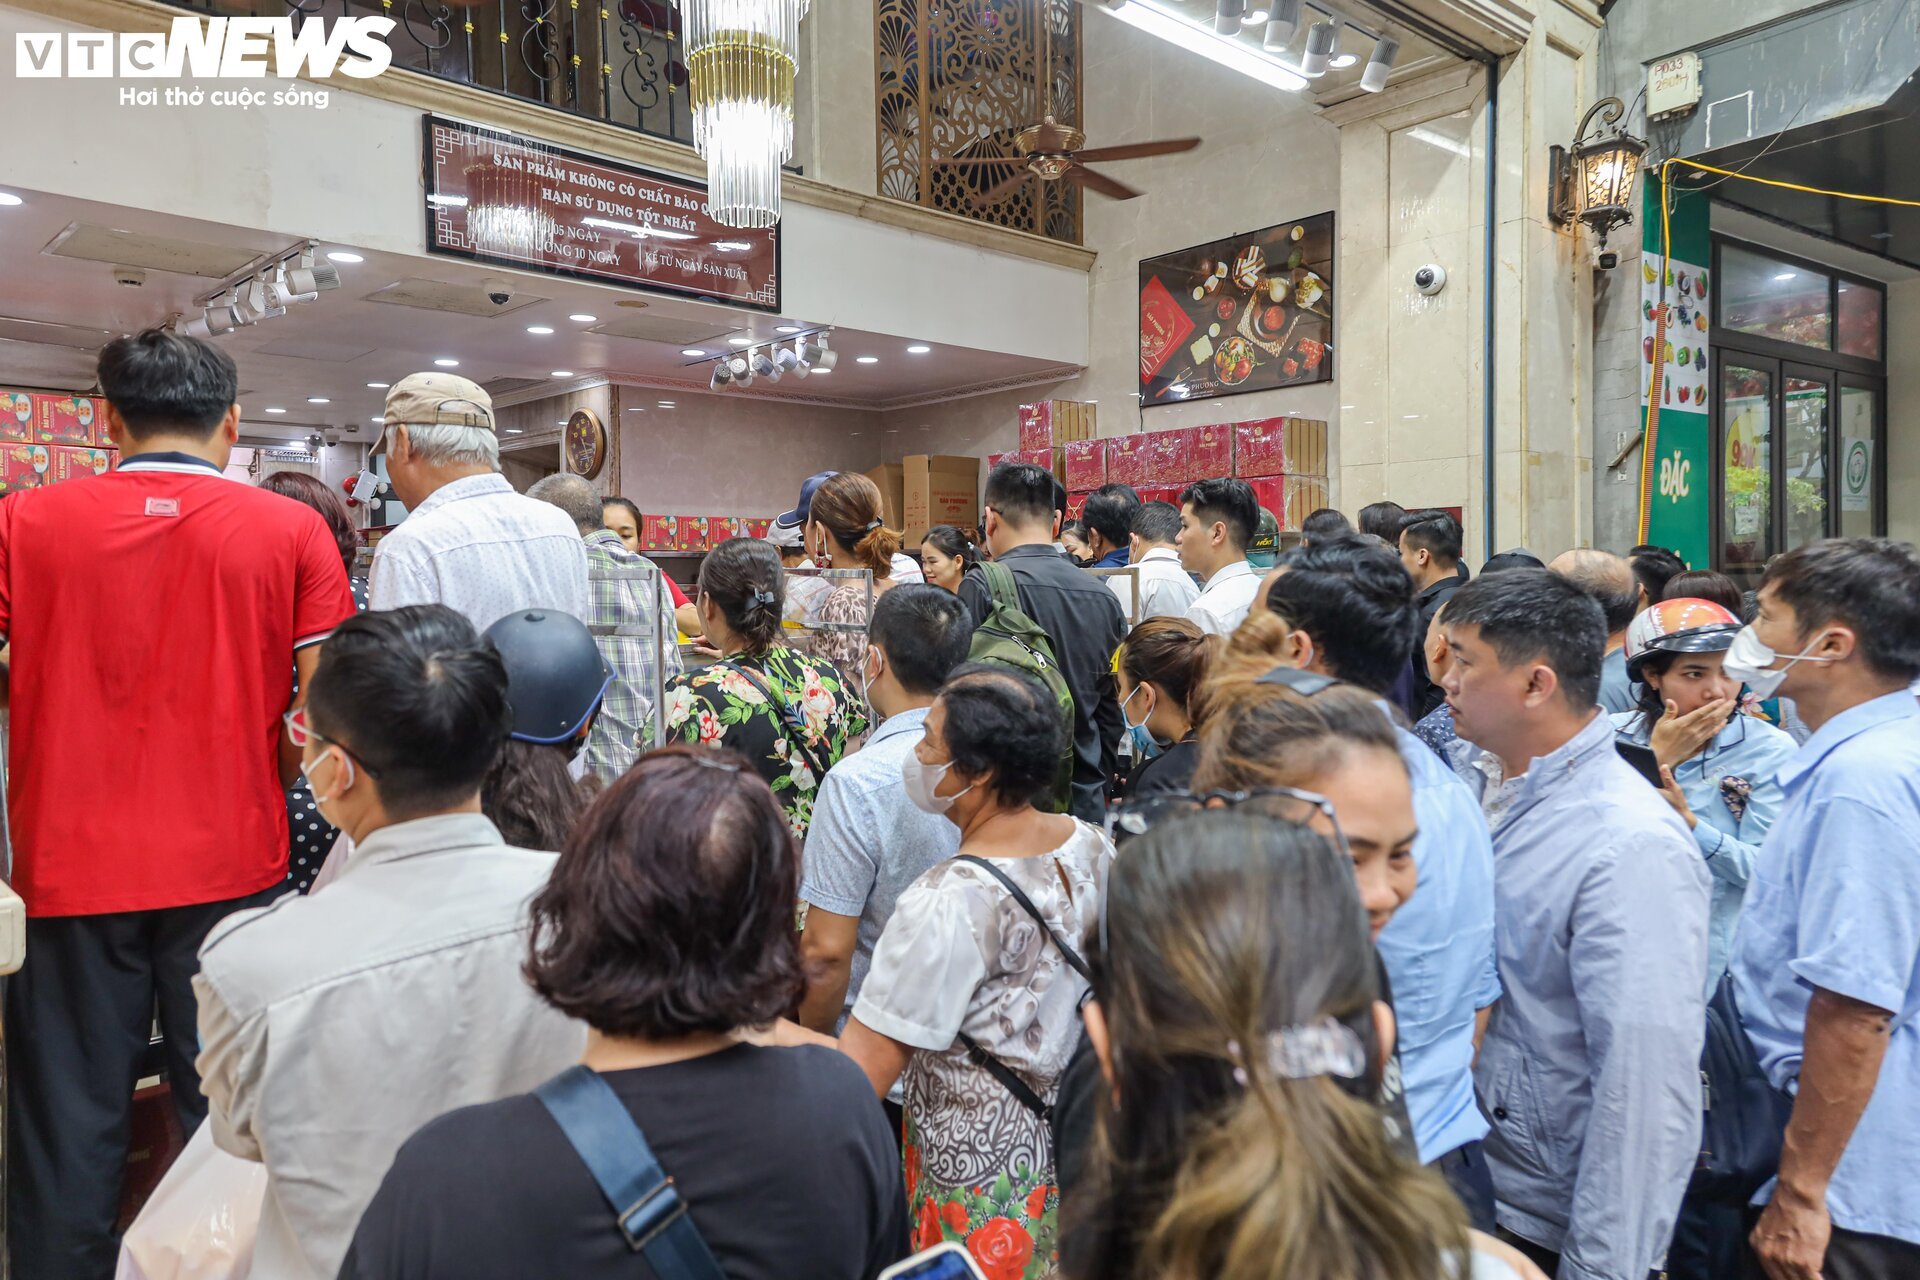 Hàng trăm người xếp hàng chờ mua bánh trung thu ở Hà Nội - Ảnh 17.